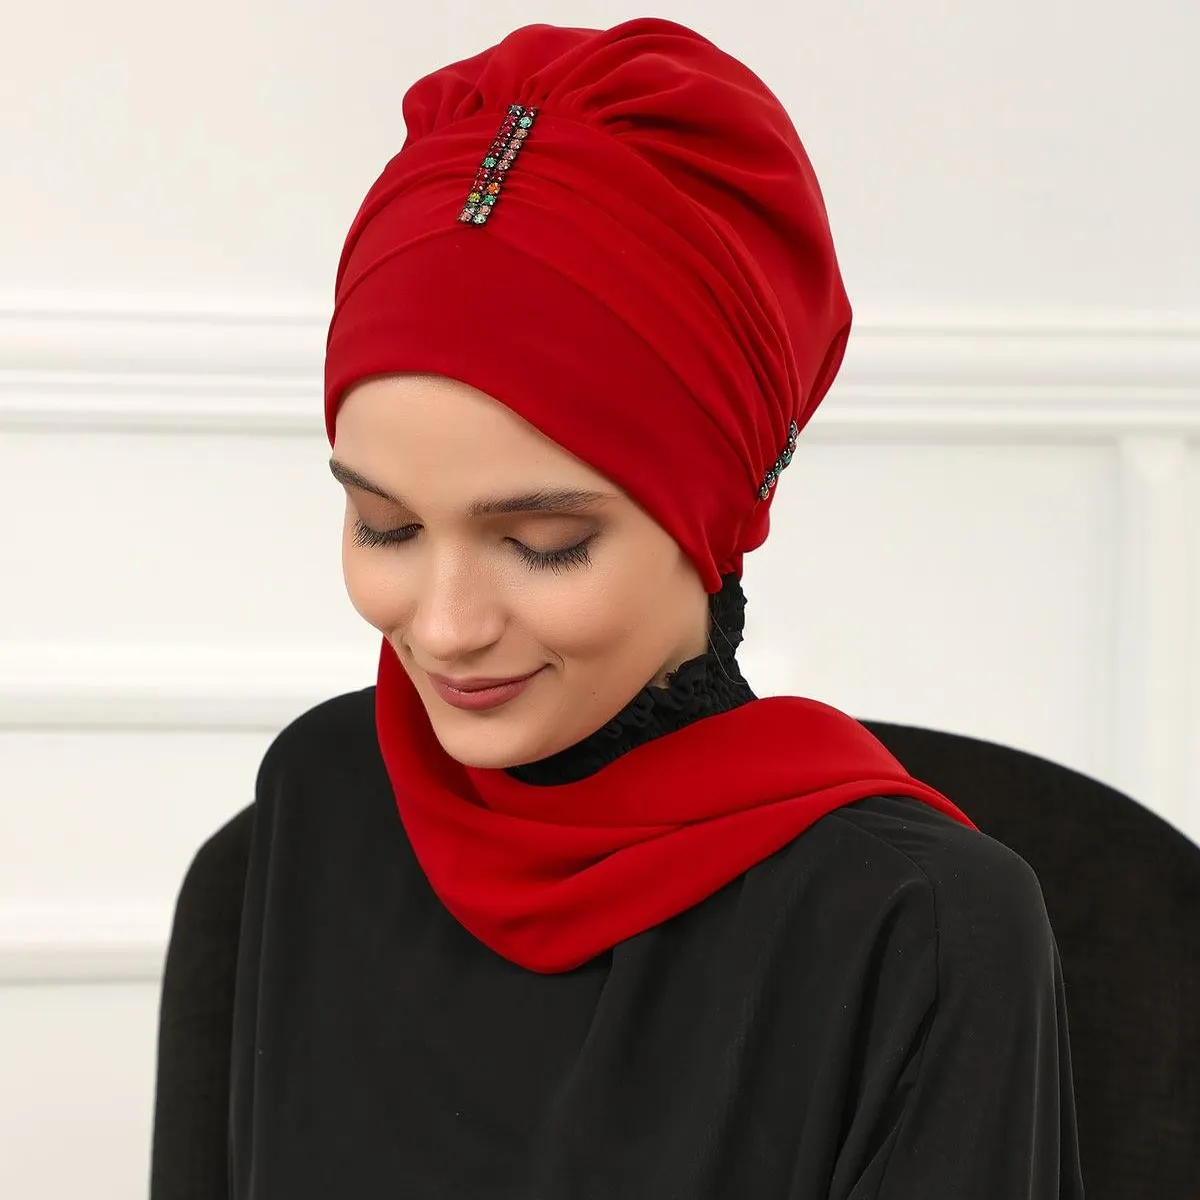 MOTIVE FORCE Gute Qualität und bequeme lange Turban Kopf wickel sofort einzigartige Hijab Designer Motorhaube Großhandel